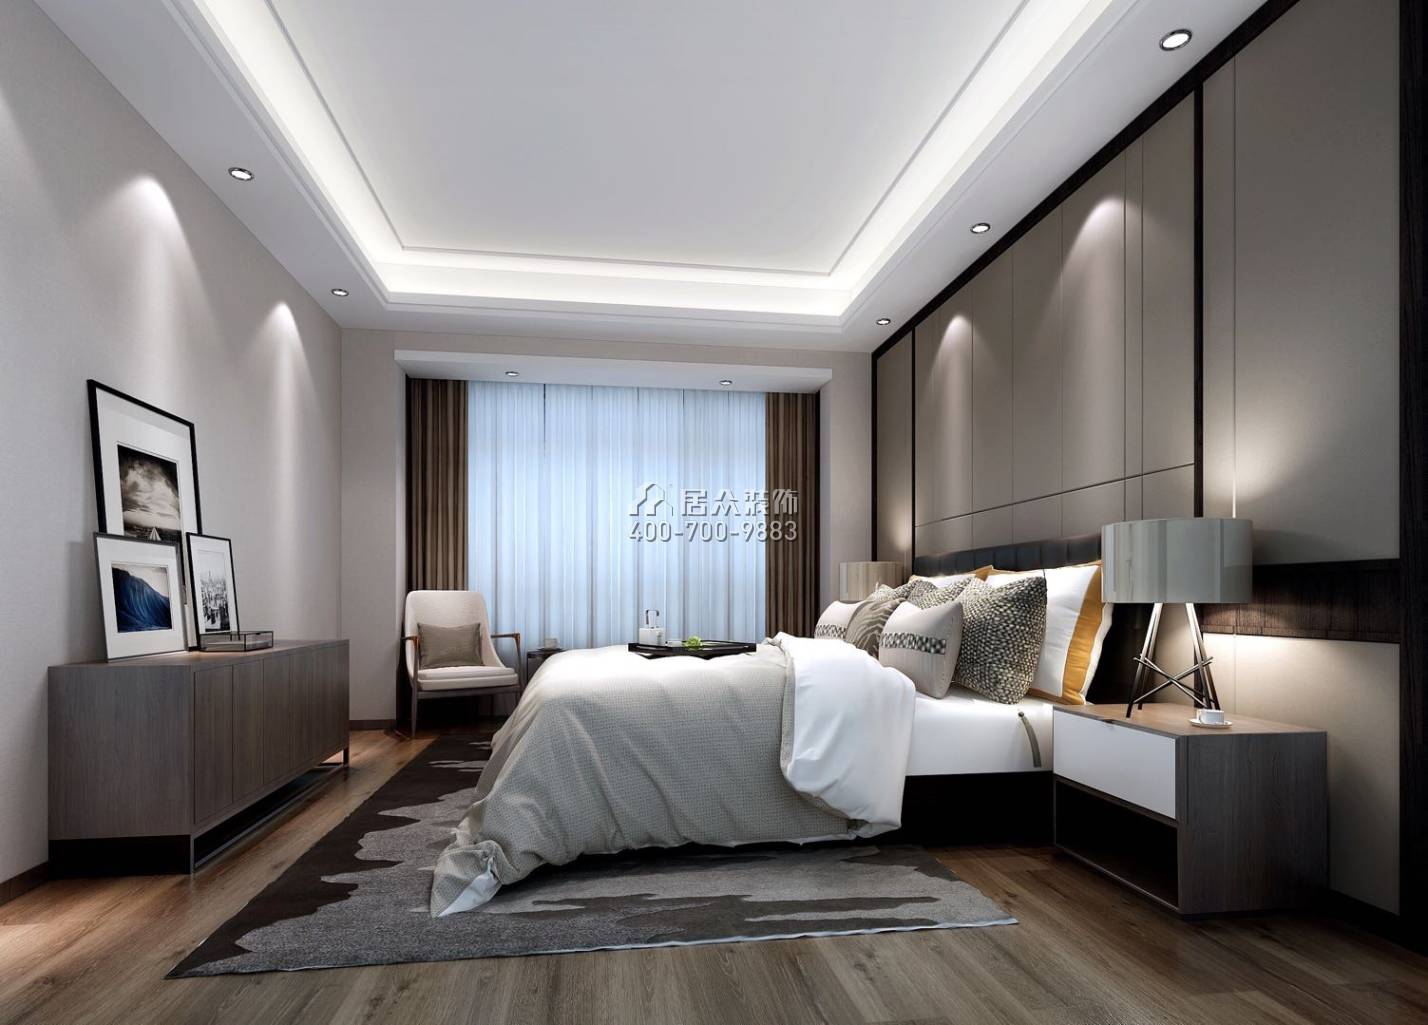 保利达江湾南岸149平方米现代简约风格平层户型卧室装修效果图